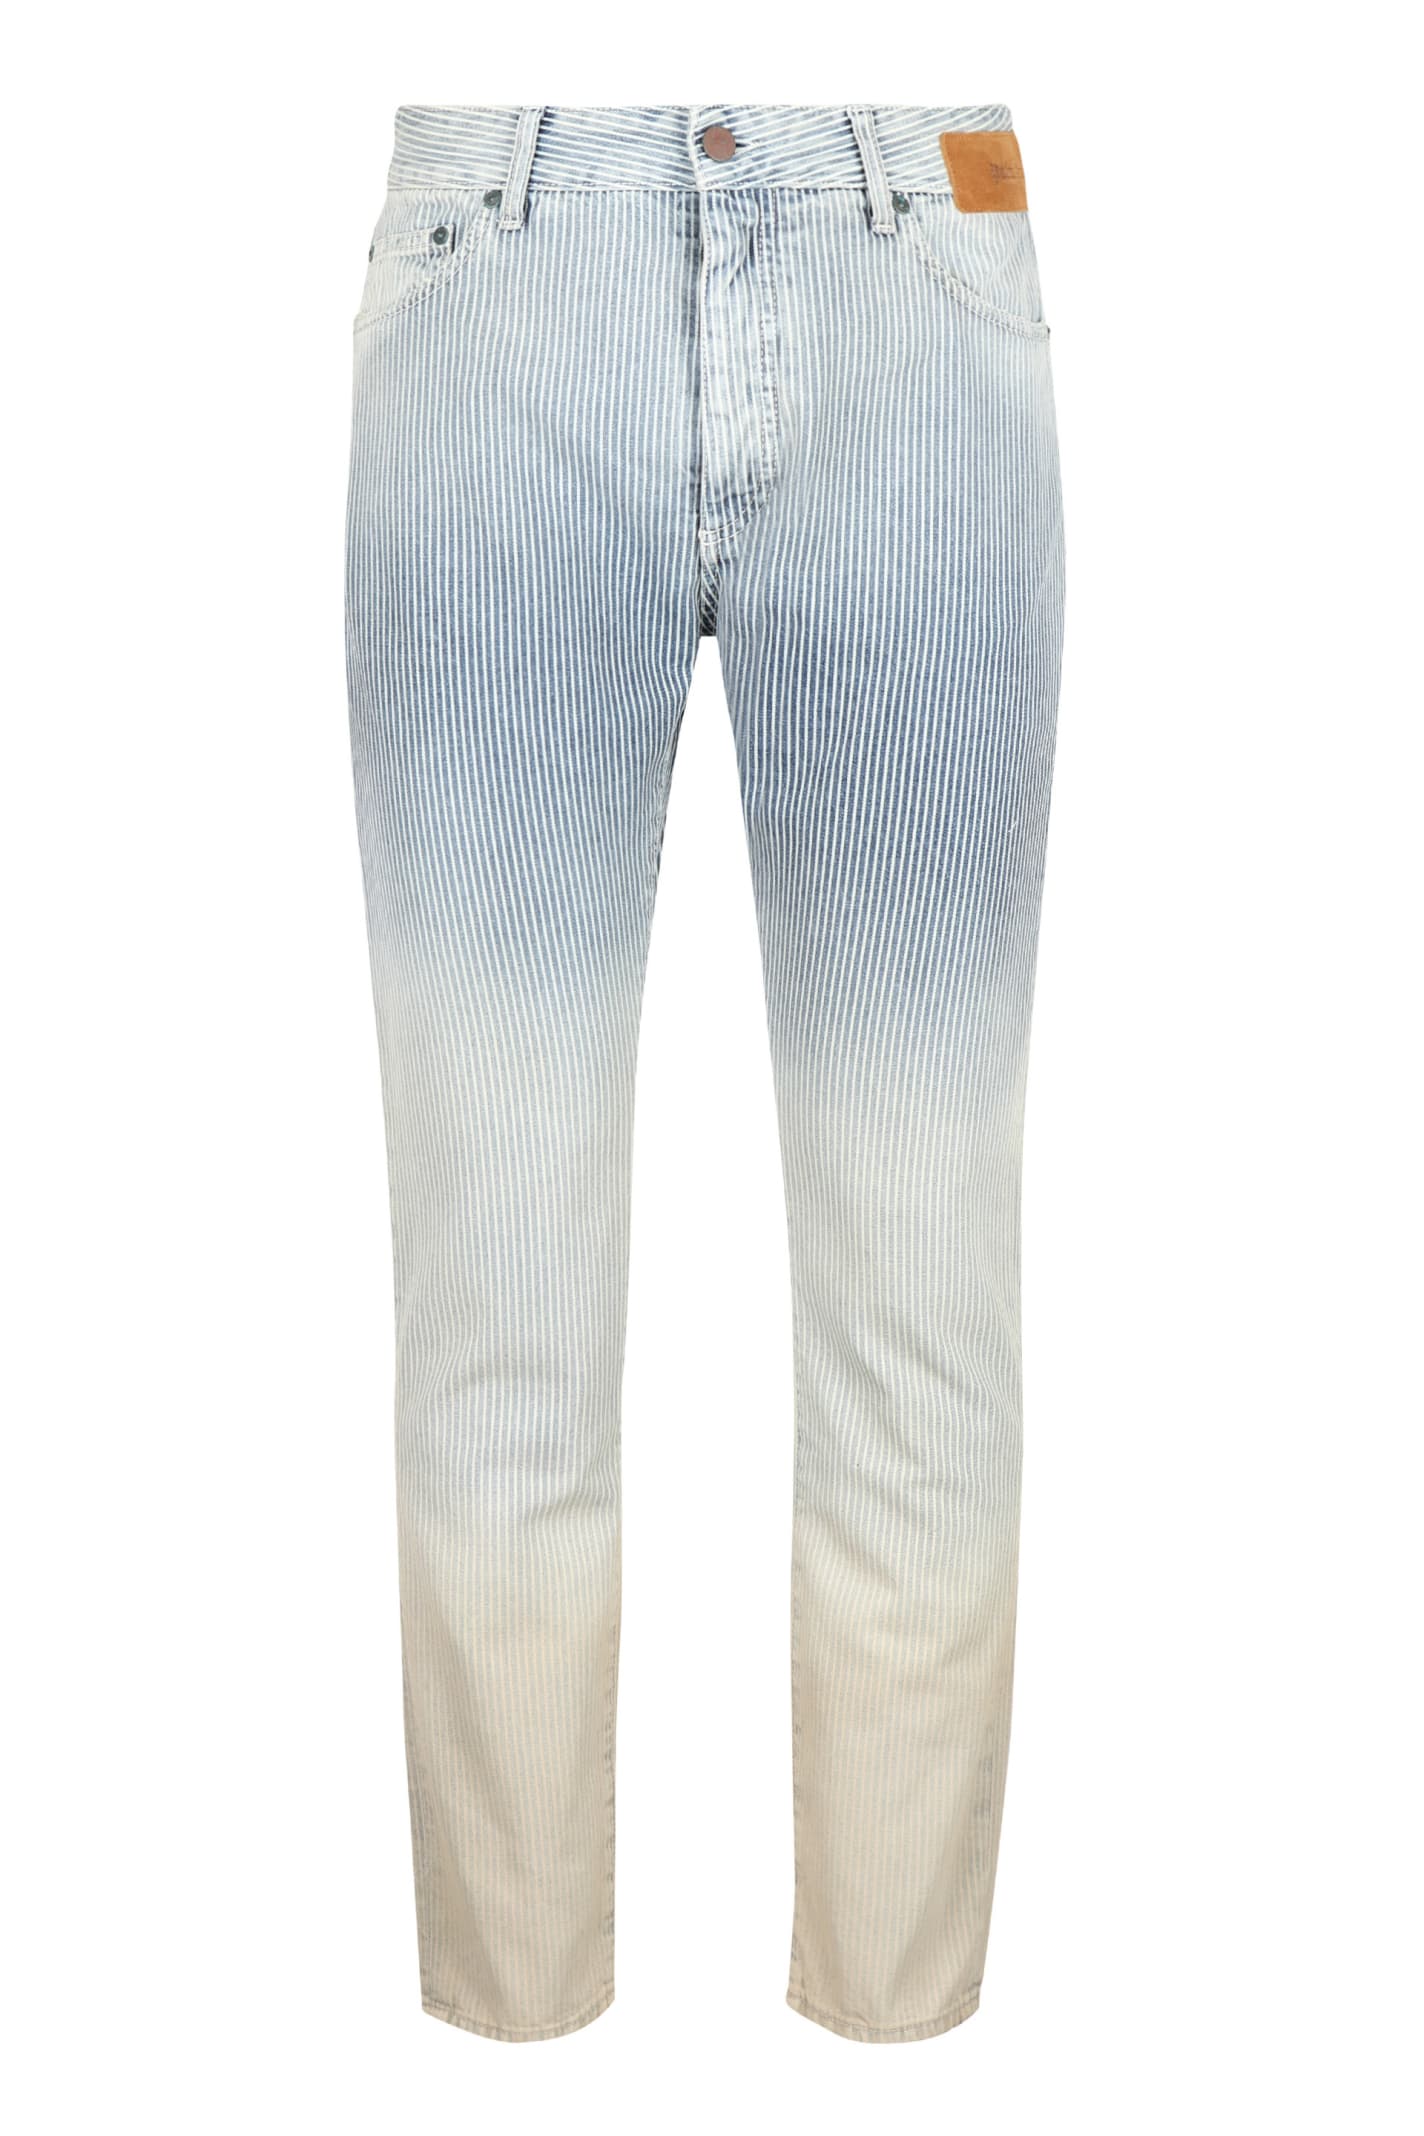 Palm Angels Regular-fit Cotton Jeans